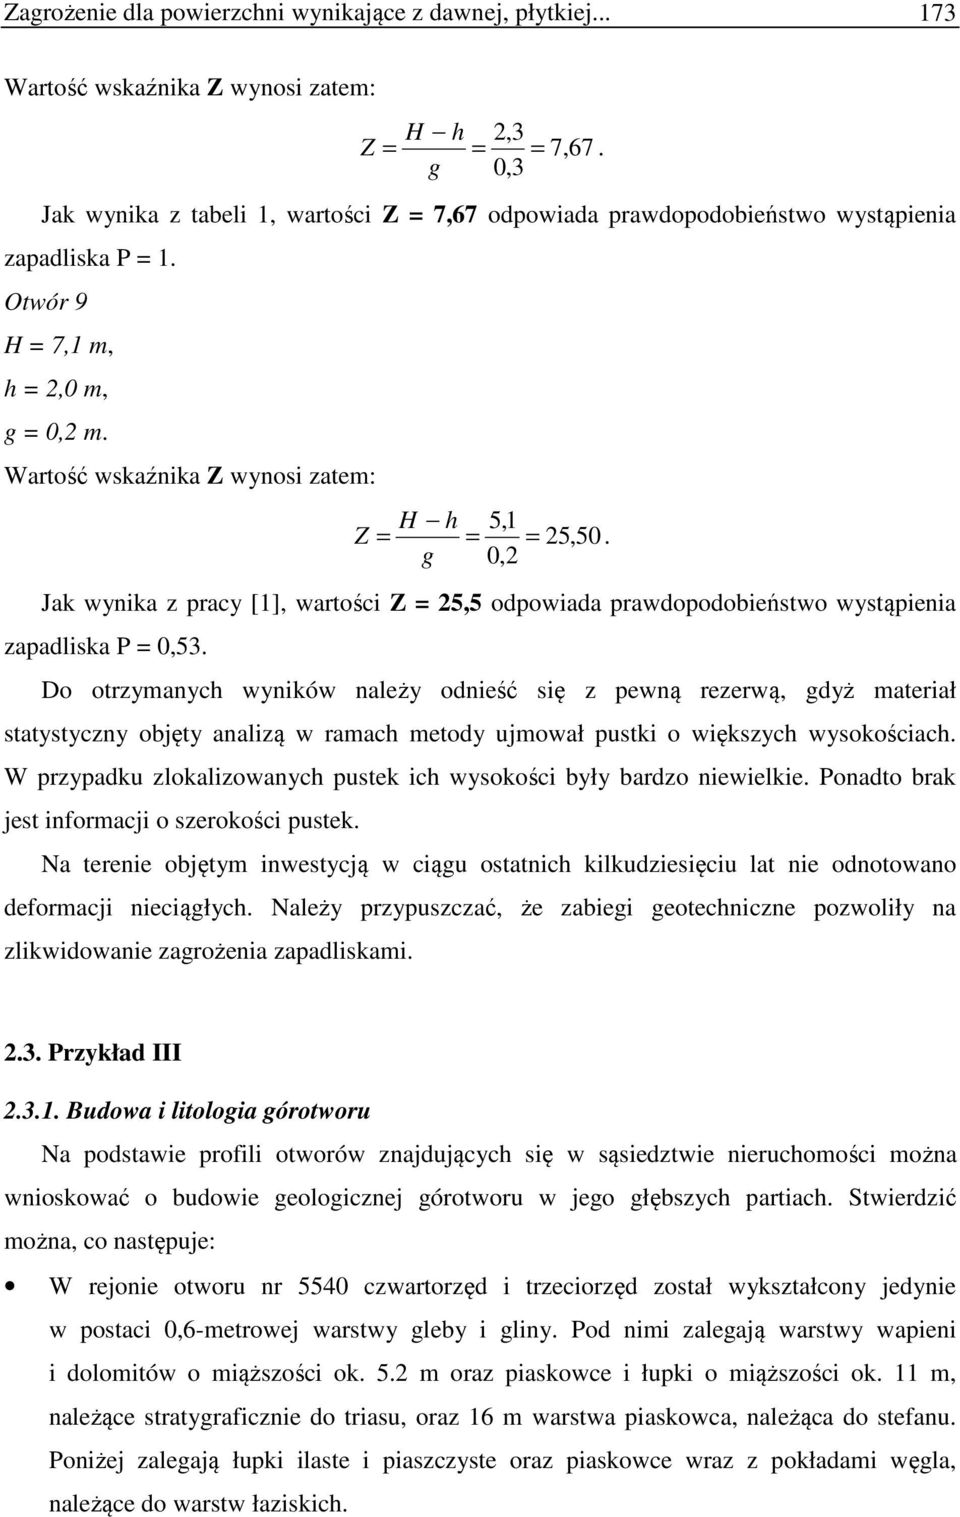 Wartość wskaźnika Z wynosi zatem: H h 5,1 Z = = = 25,50. g 0,2 Jak wynika z pracy [1], wartości Z = 25,5 odpowiada prawdopodobieństwo wystąpienia zapadliska P = 0,53.